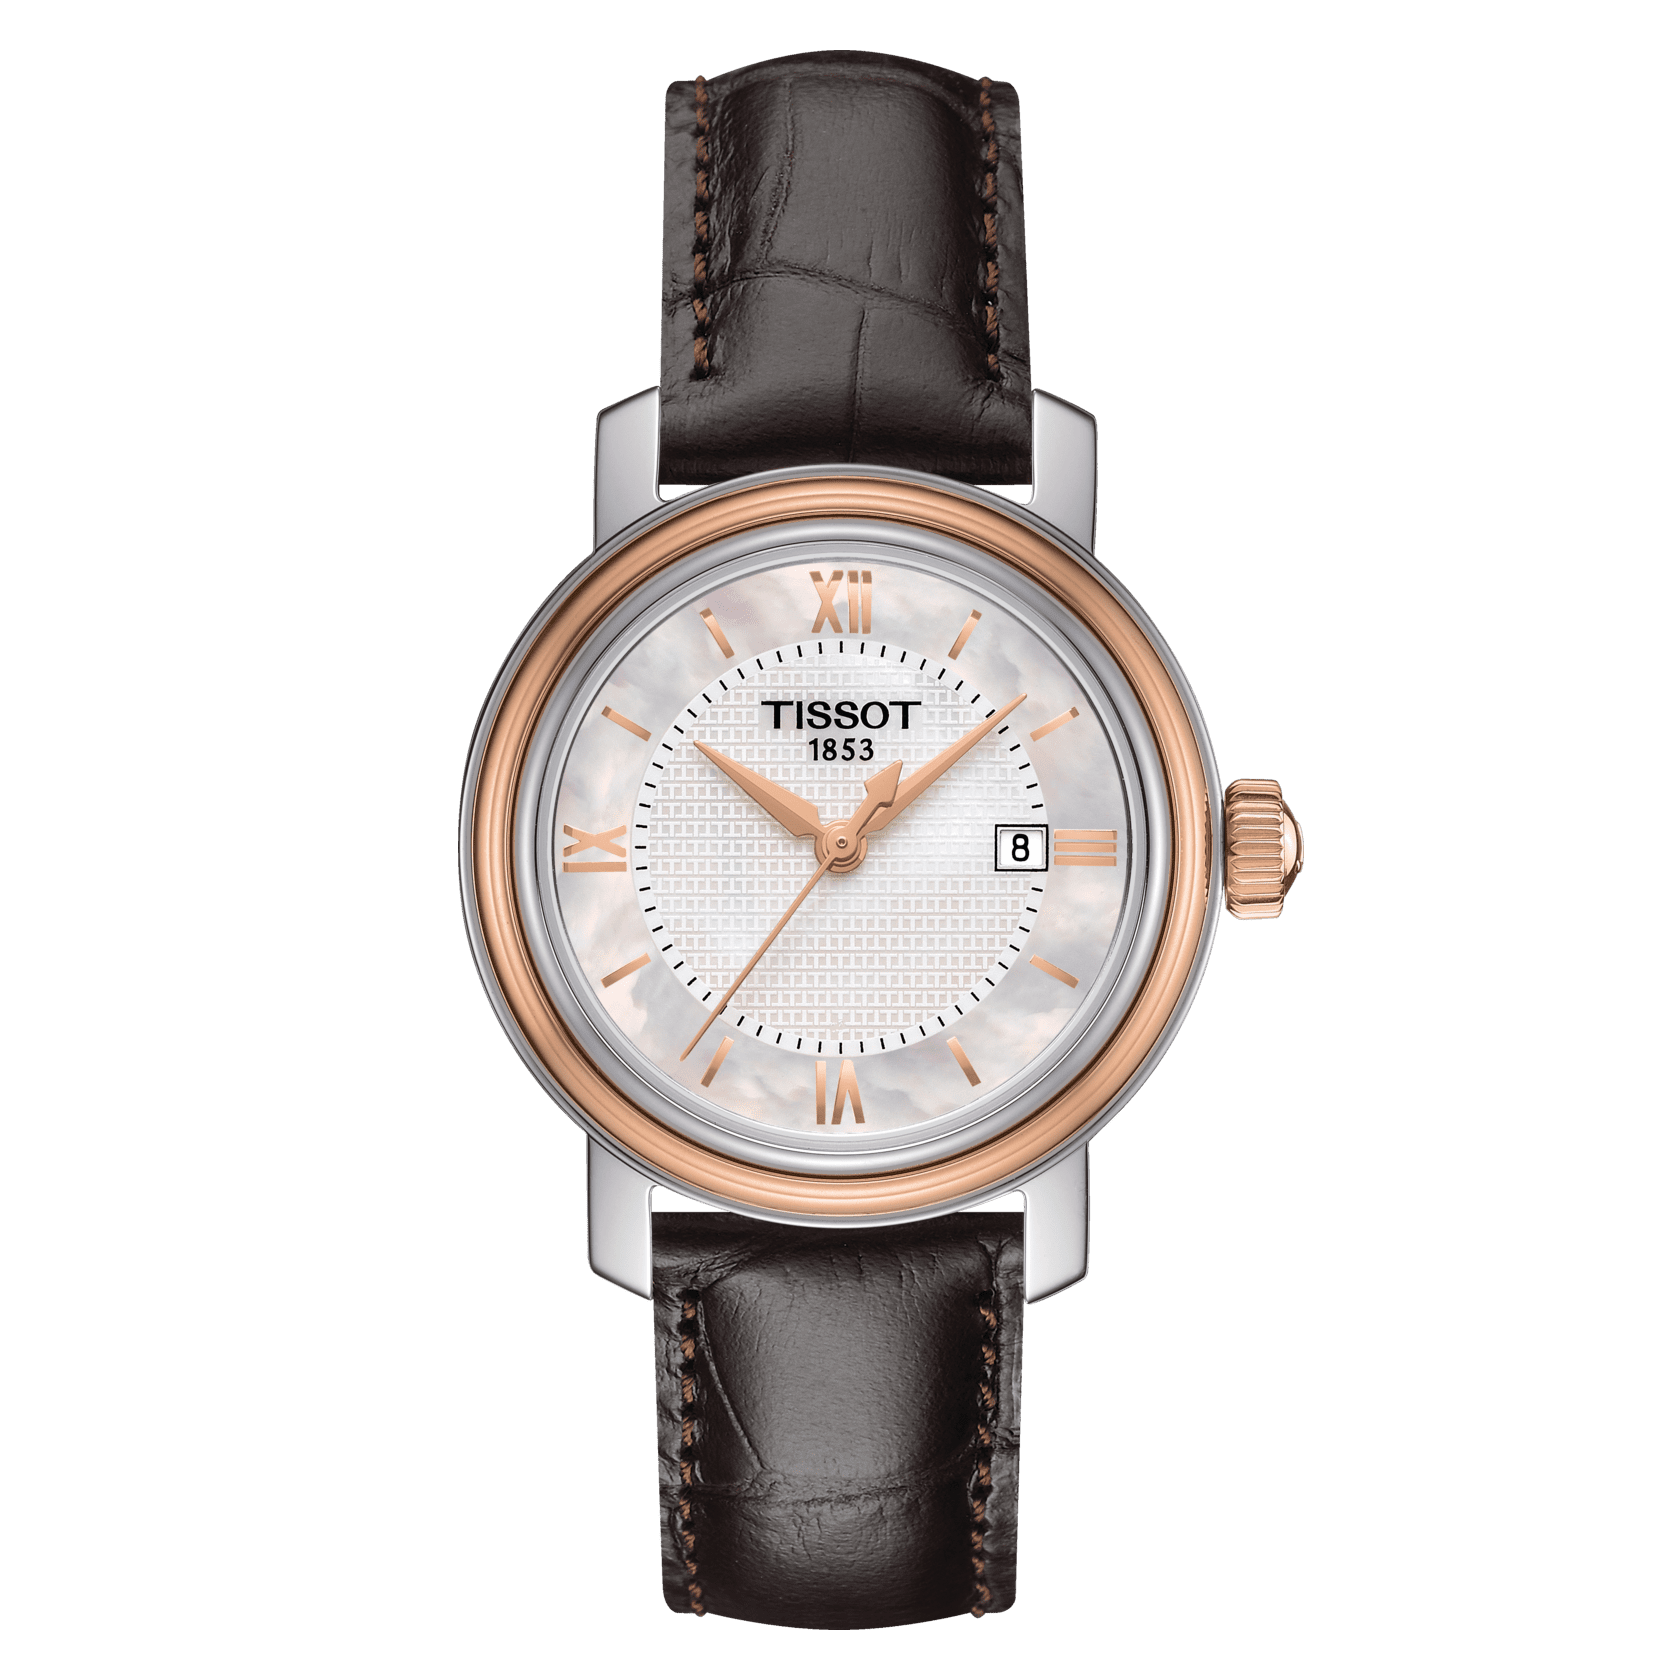 Wholesale Luxury Replica Watches